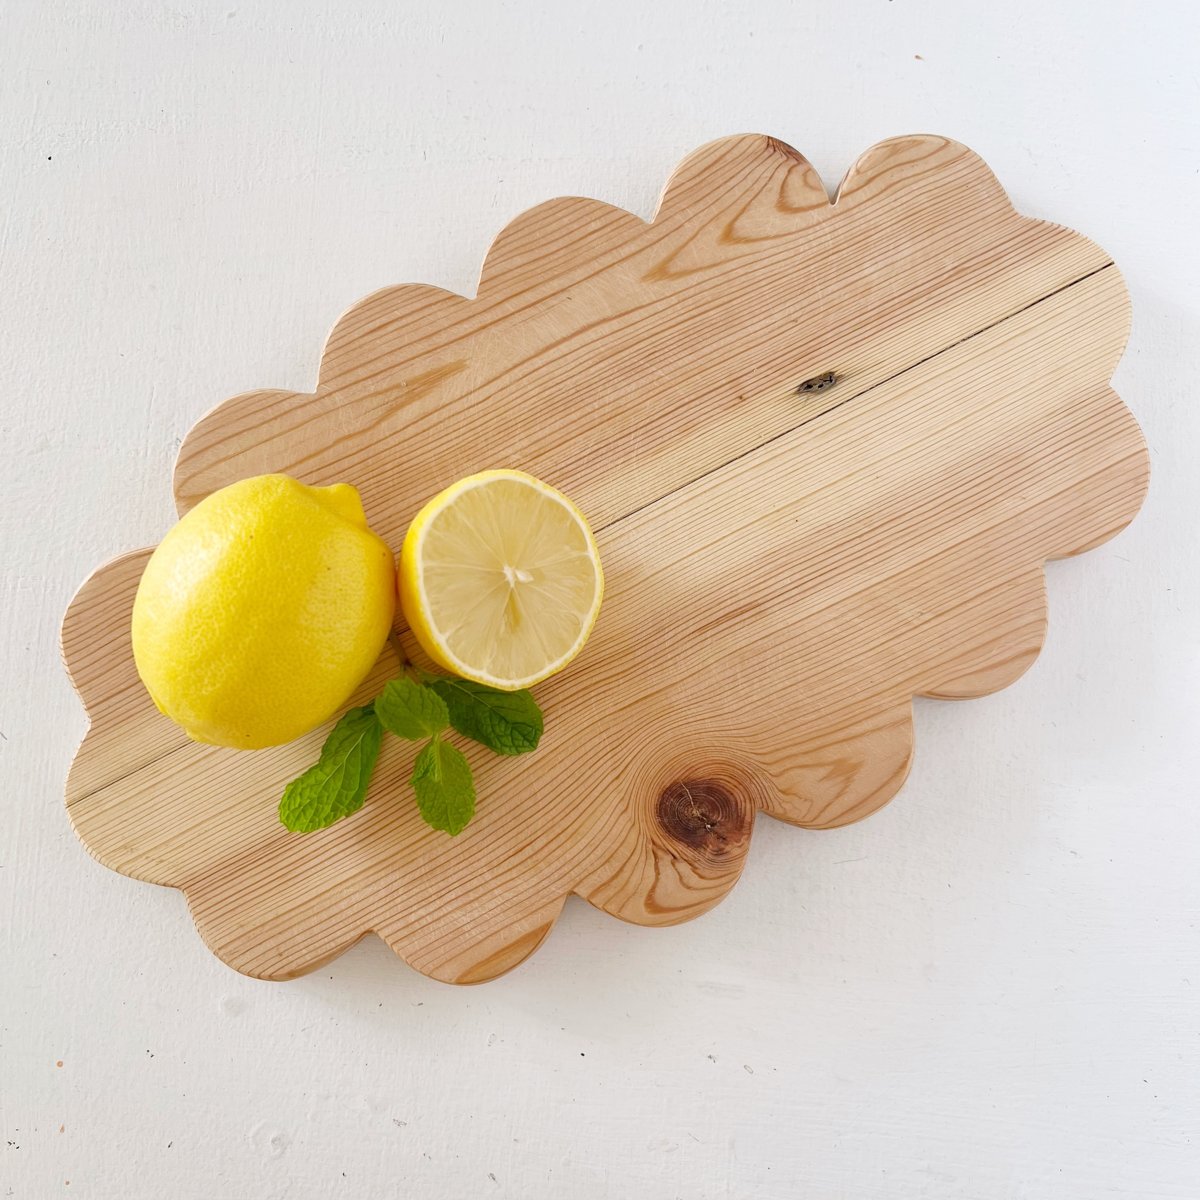 mondocherry - Ivy Alice | oval wooden serving board | scallops - lemons